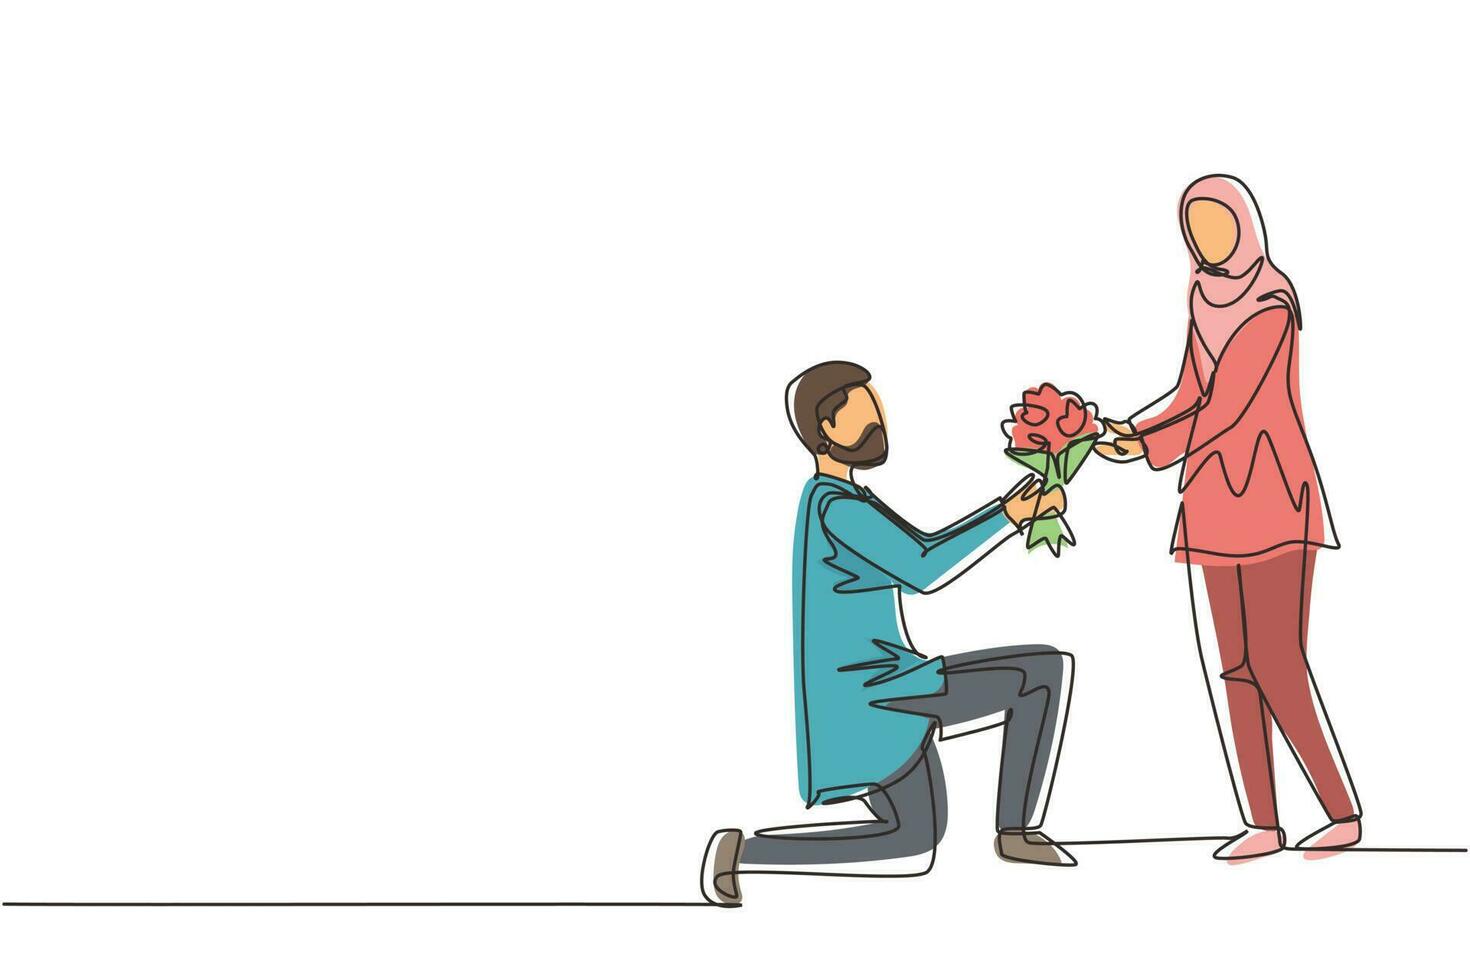 unico disegno a linea continua uomo arabo in ginocchio che fa proposta di matrimonio a una donna con bouquet. ragazzo innamorato che regala fiori. coppia felice che si prepara per il matrimonio. vettore di disegno grafico a una linea